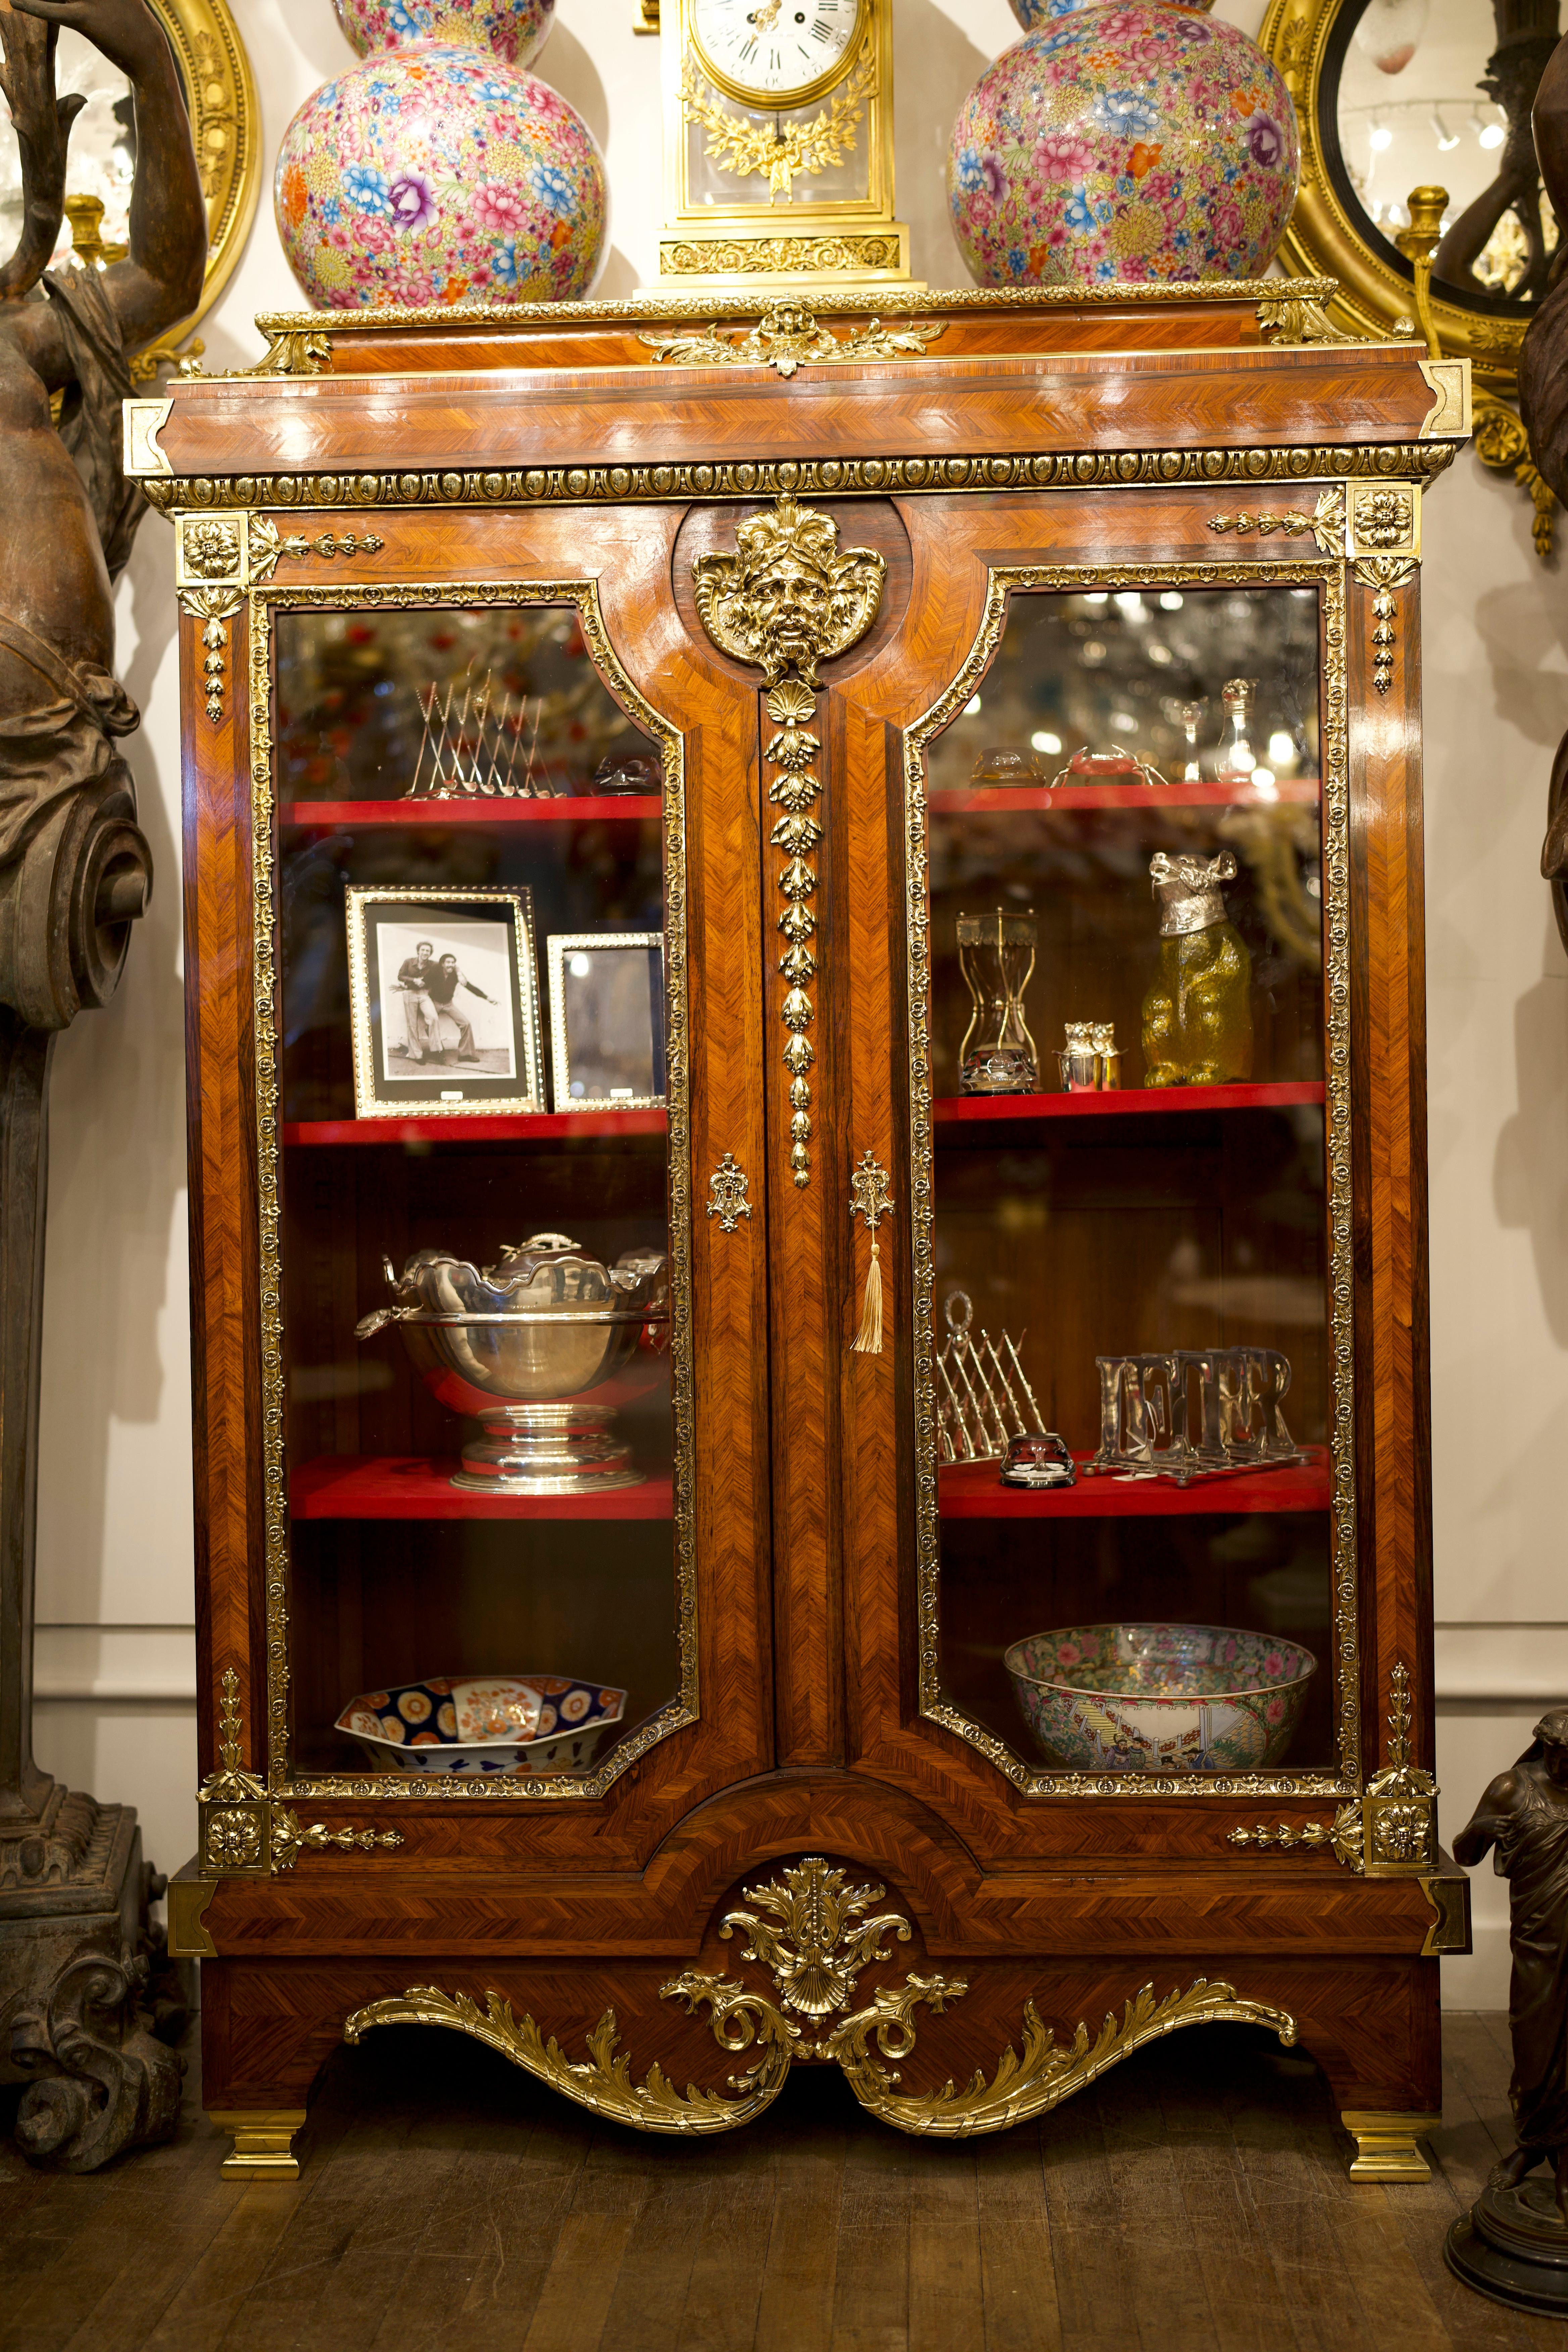 Eine atemberaubende 18. Jahrhundert Ormolu montiert Französisch Kingwood Kabinett / Vitrine.

Der Schrank hat zwei große Glastüren. Jede Tür ist mit Königsholz verkleidet und durch eingelegte Messingbänder getrennt, die mit fein gearbeiteten,